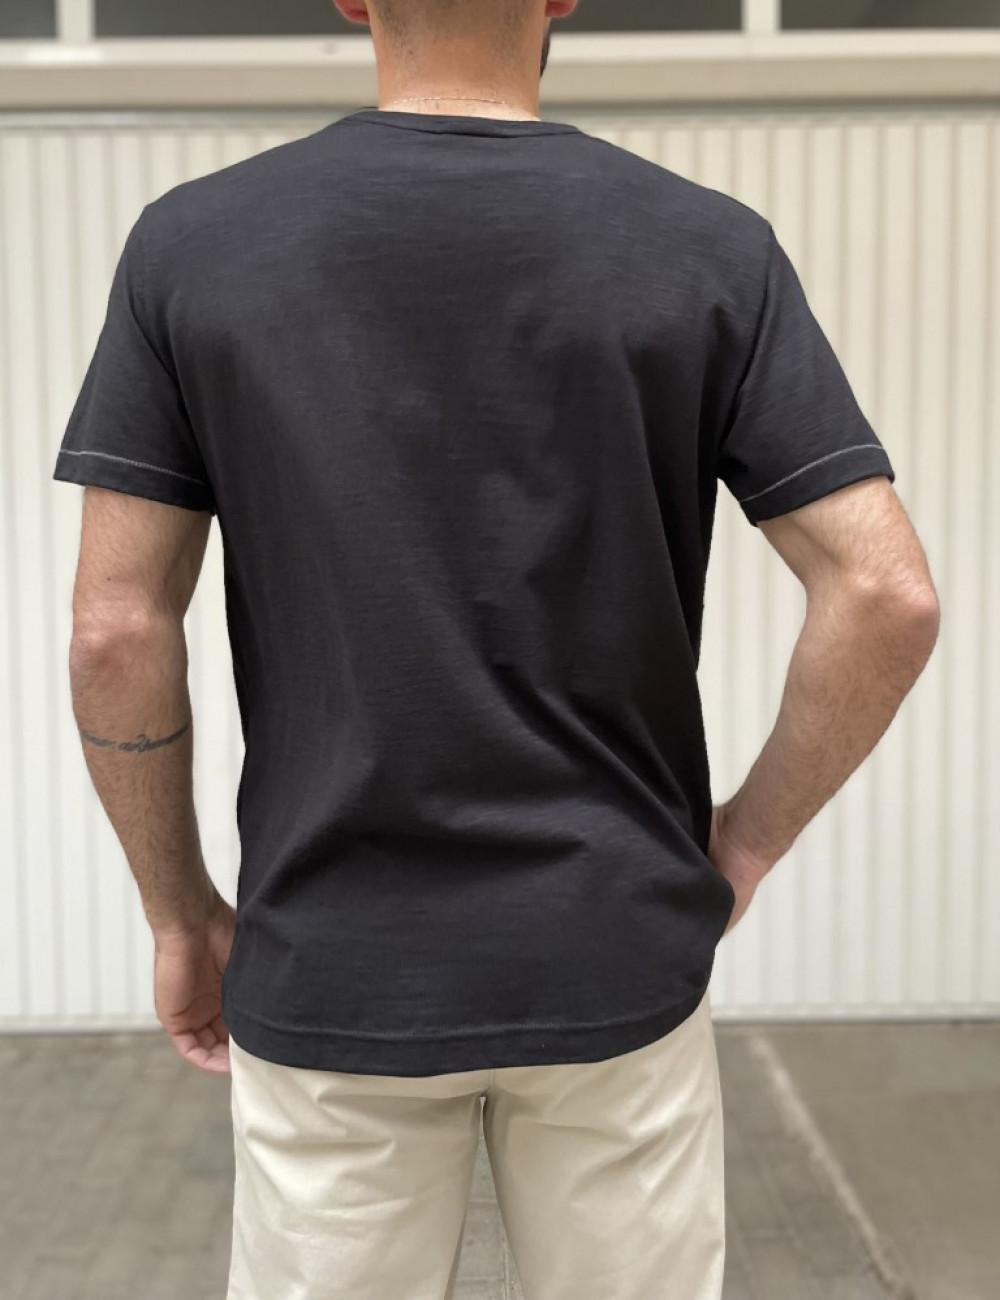 Everbest ανδρική μαύρο φλάμα κοντομάνικη μπλούζα με τύπωμα 24812M